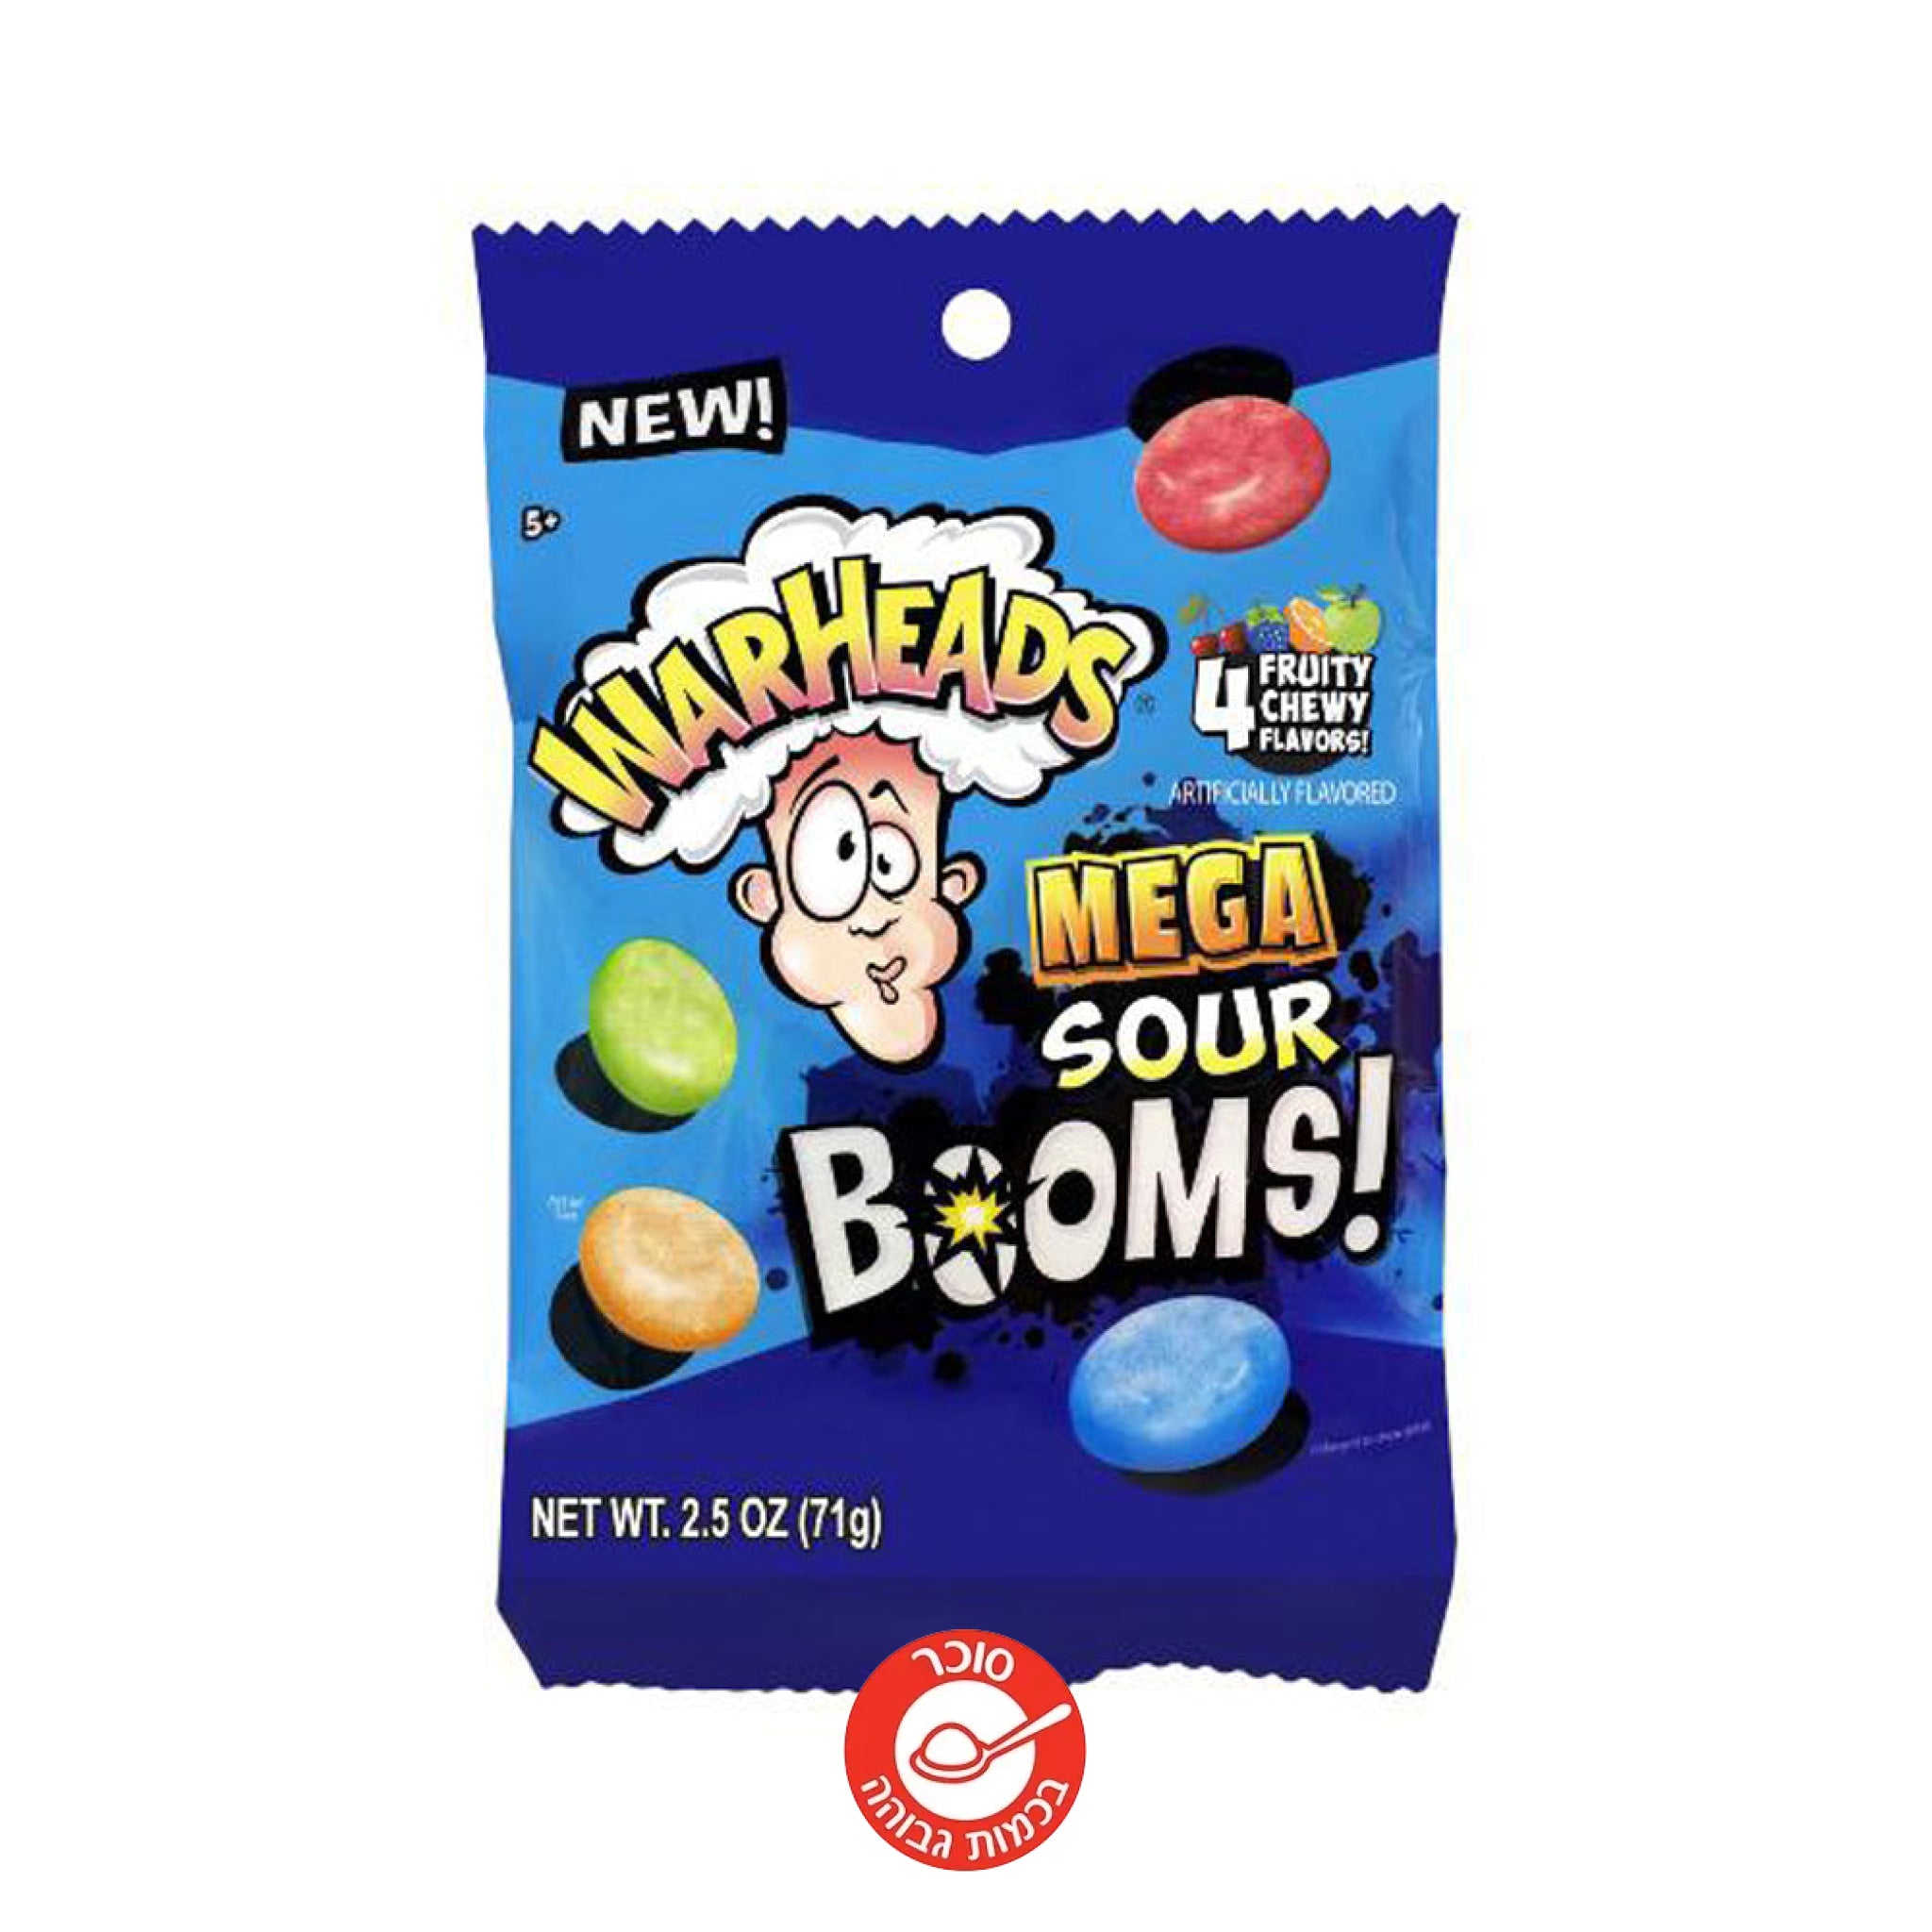 Warheads Mega Sour Bombs Fruity Chew סוכריות רכות סופר חמוצות וורהאדס